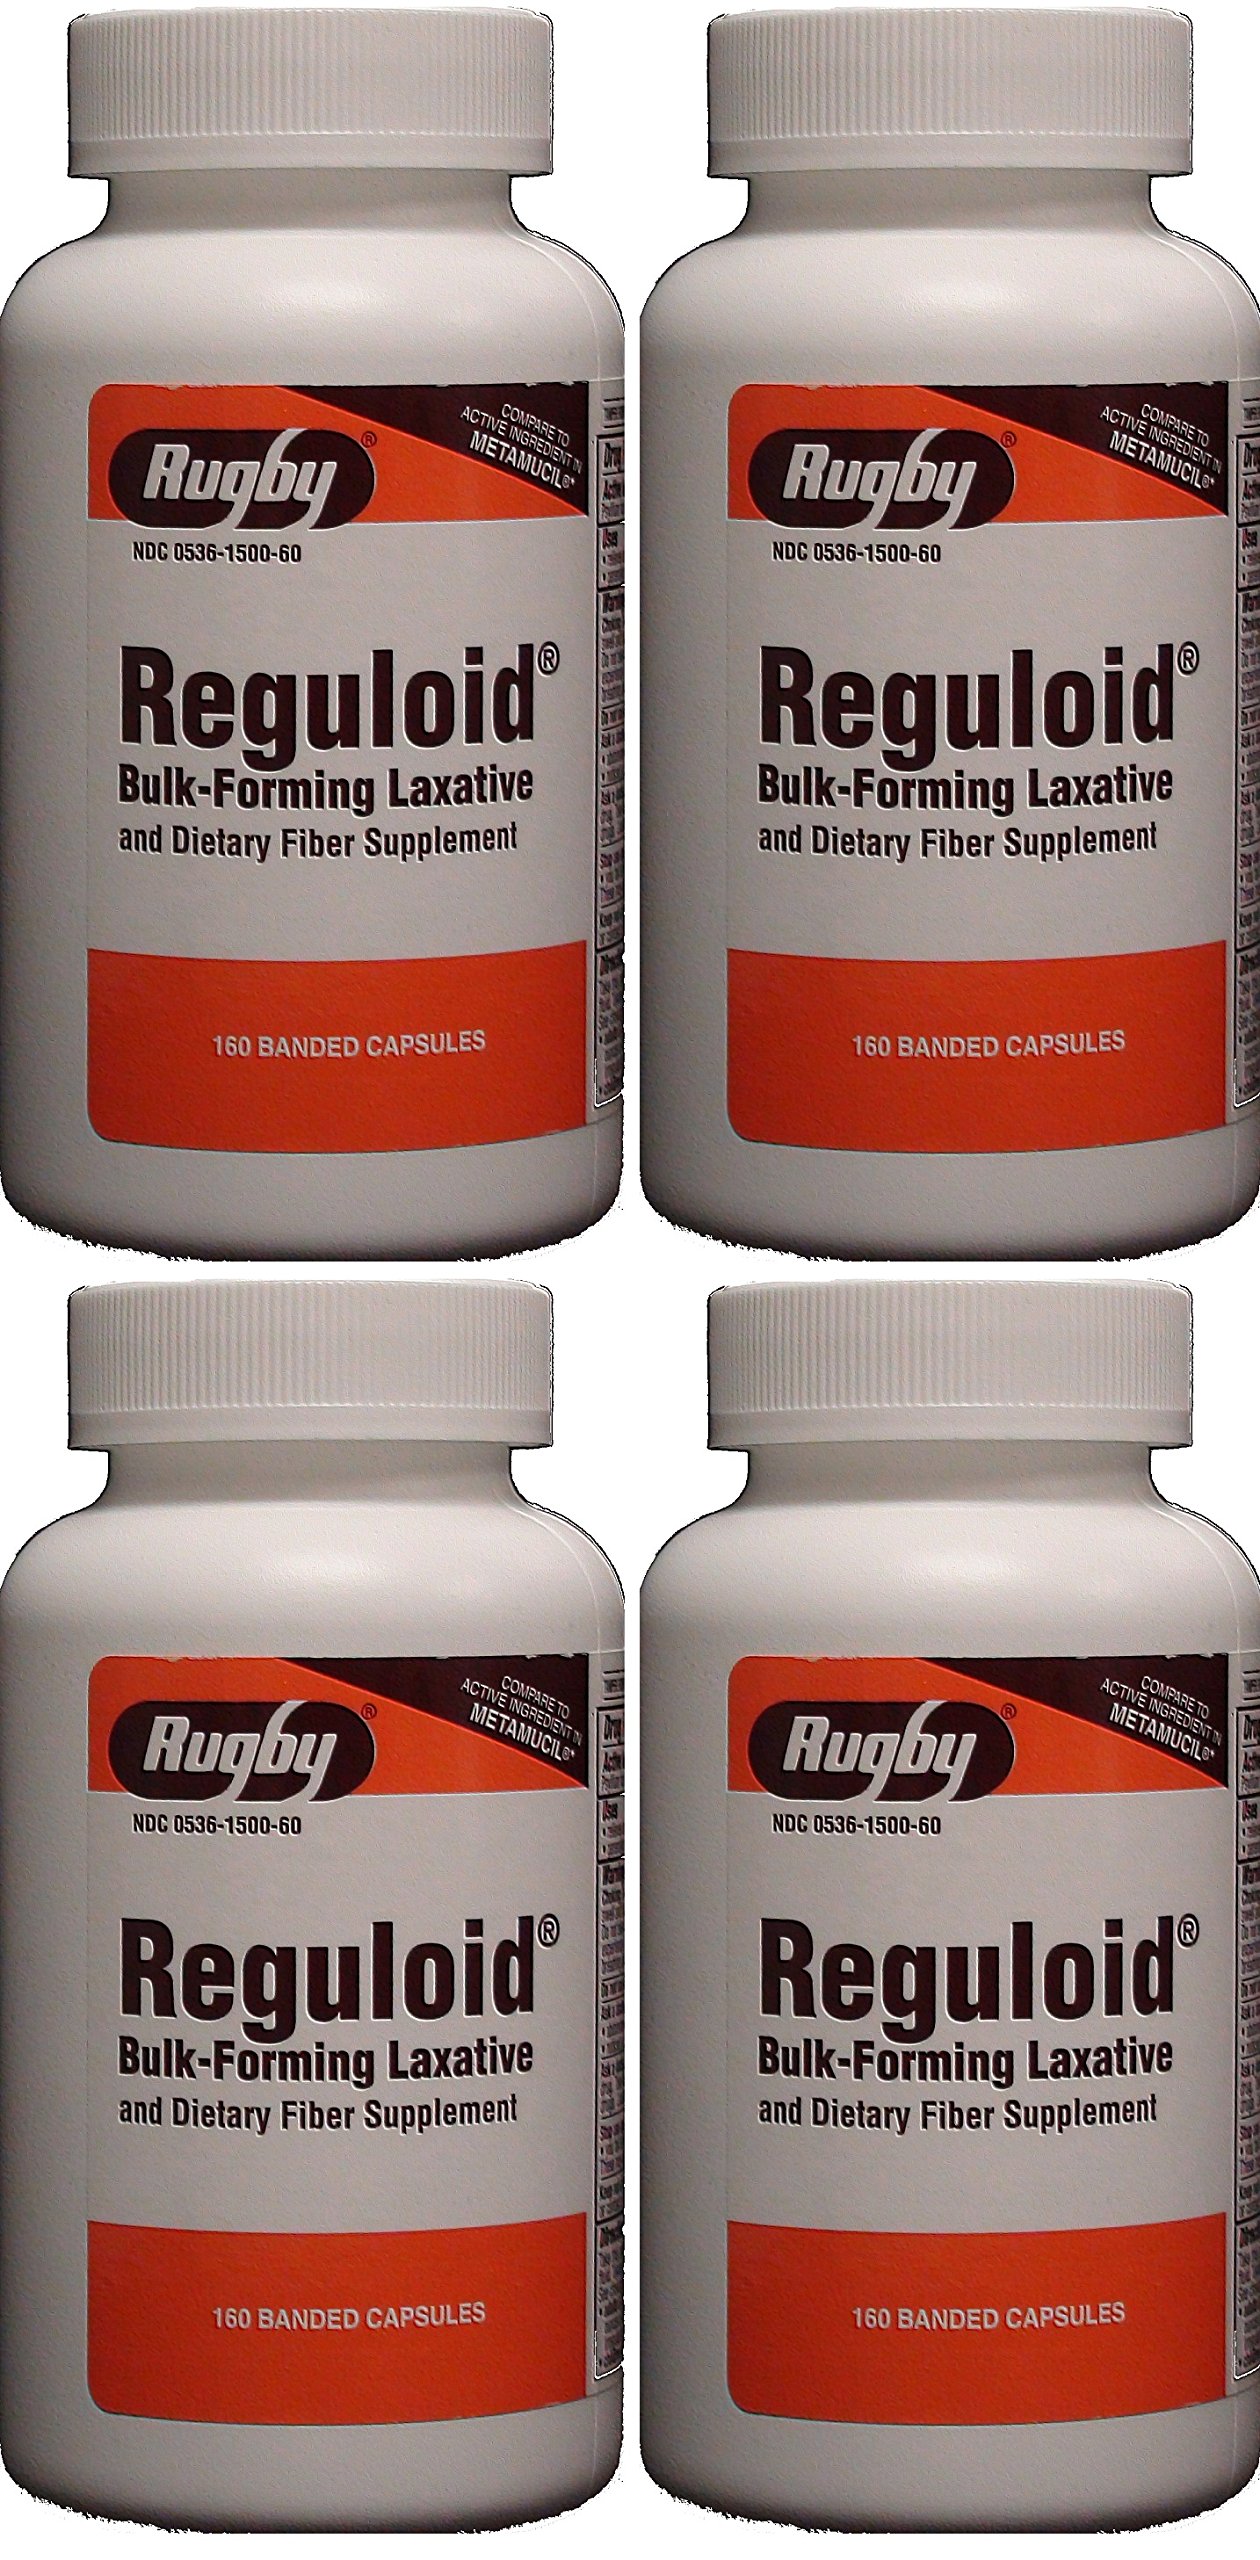 Reguloid Psyllium Husk Natural Vegetable Bulk Forming Laxative Fiber Supplement Capsules Therapy for Regularity Generic for Metamucil 160 Capsules ...